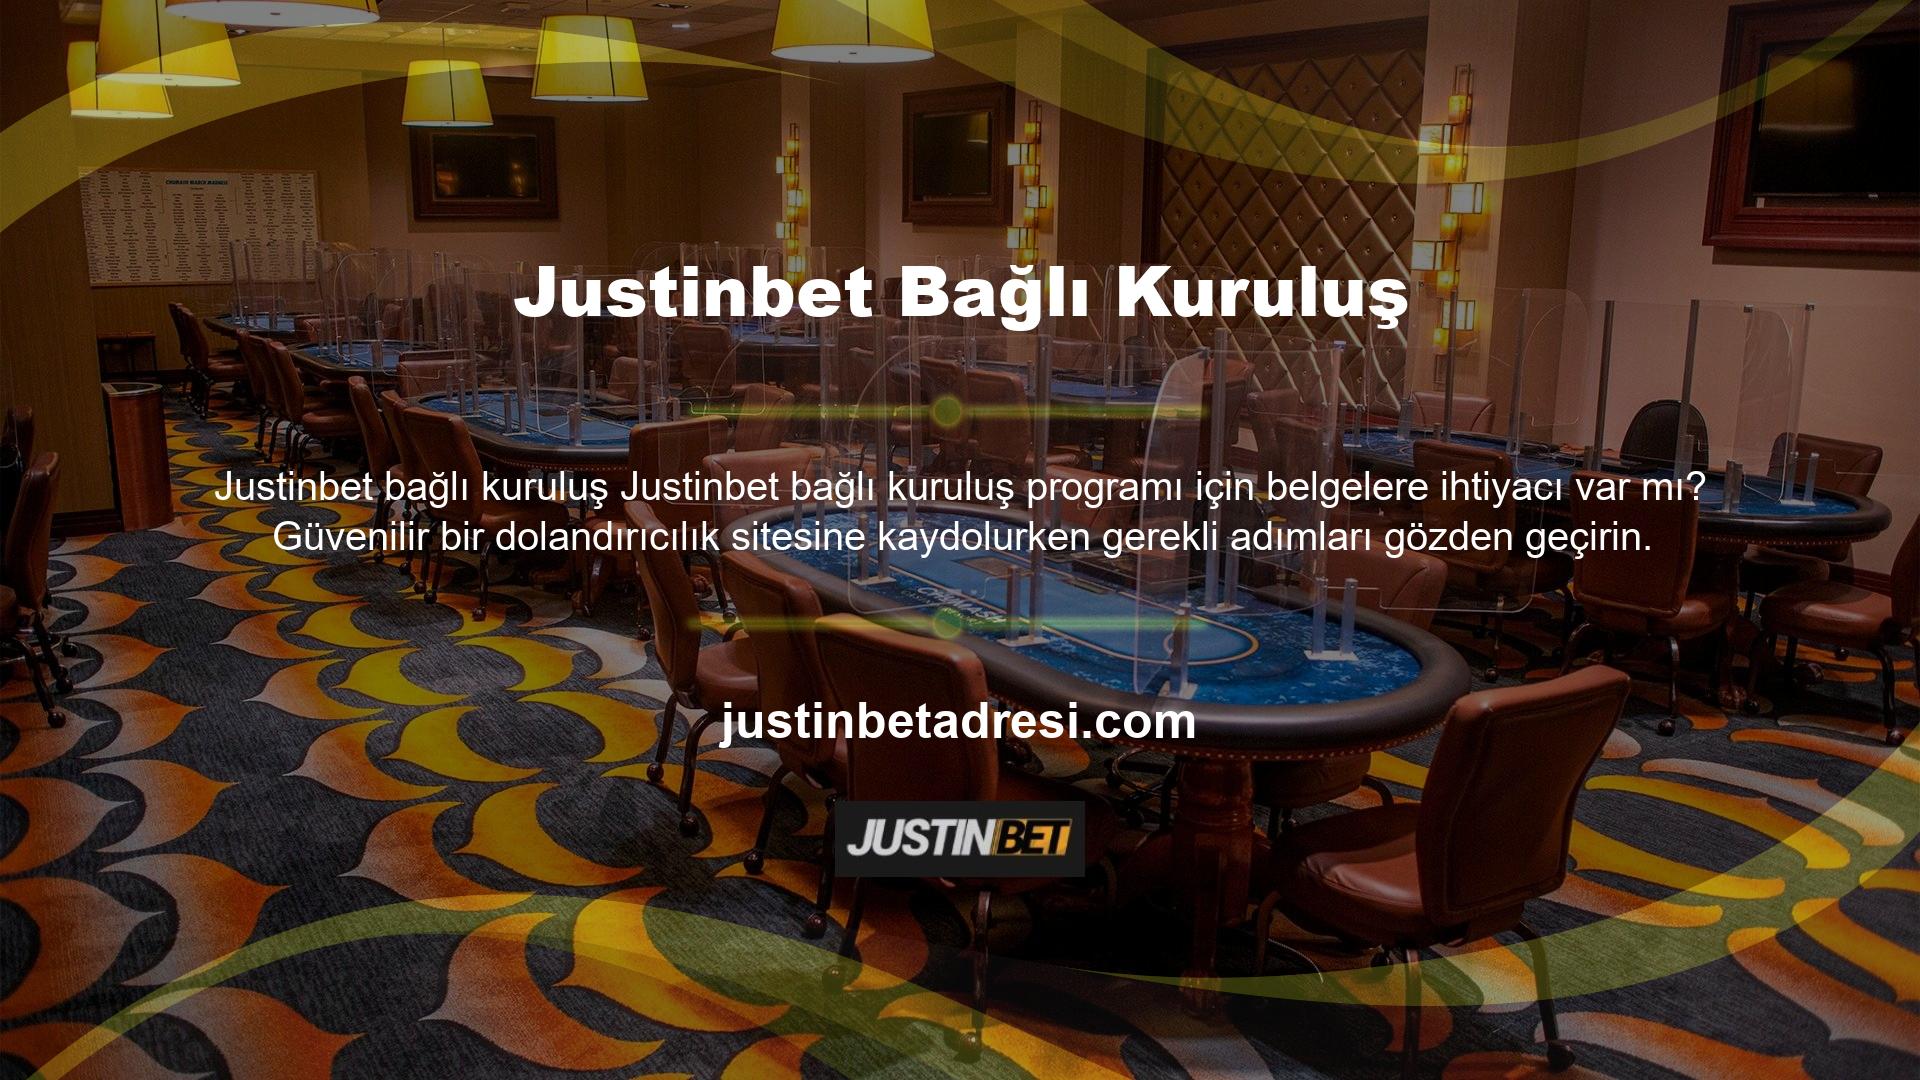 Türkiye'nin önde gelen yasa dışı casino, canlı bahis ve casino sağlayıcısı, güvenilirlik ve karlılık açısından en iyilerden biridir